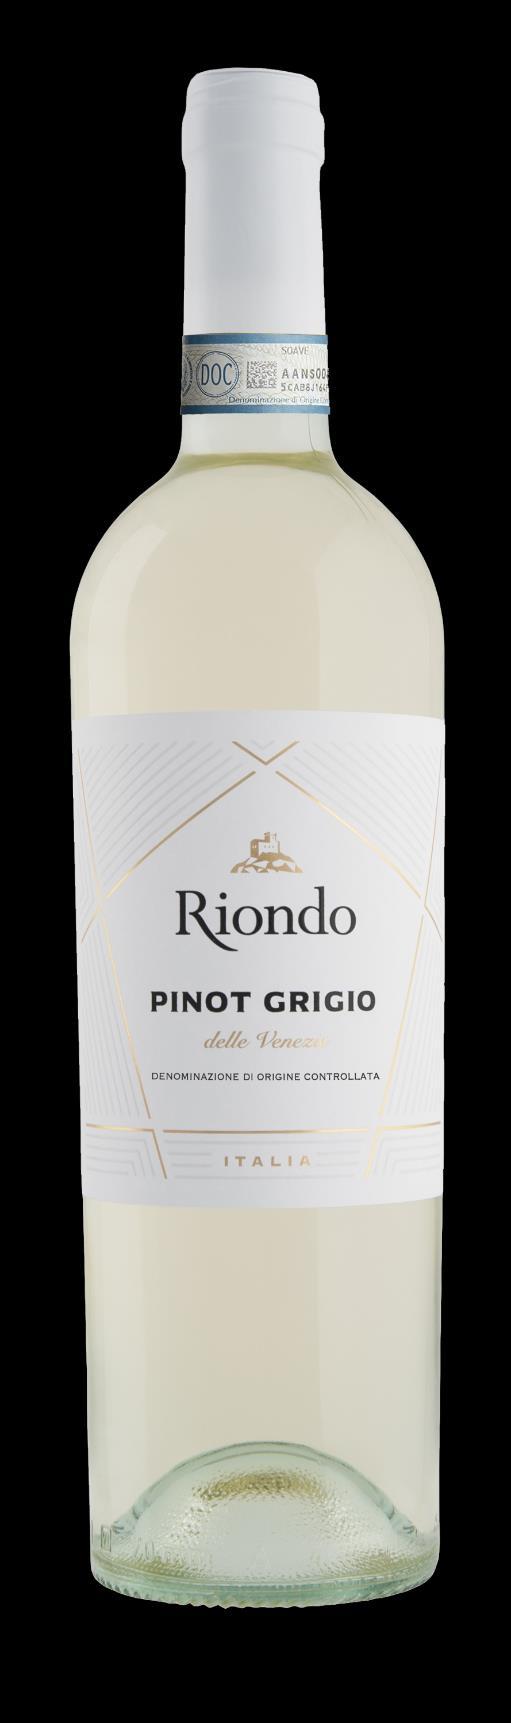 Pinot Grigio Bianco, fermo Delle Venezie D.O.C.